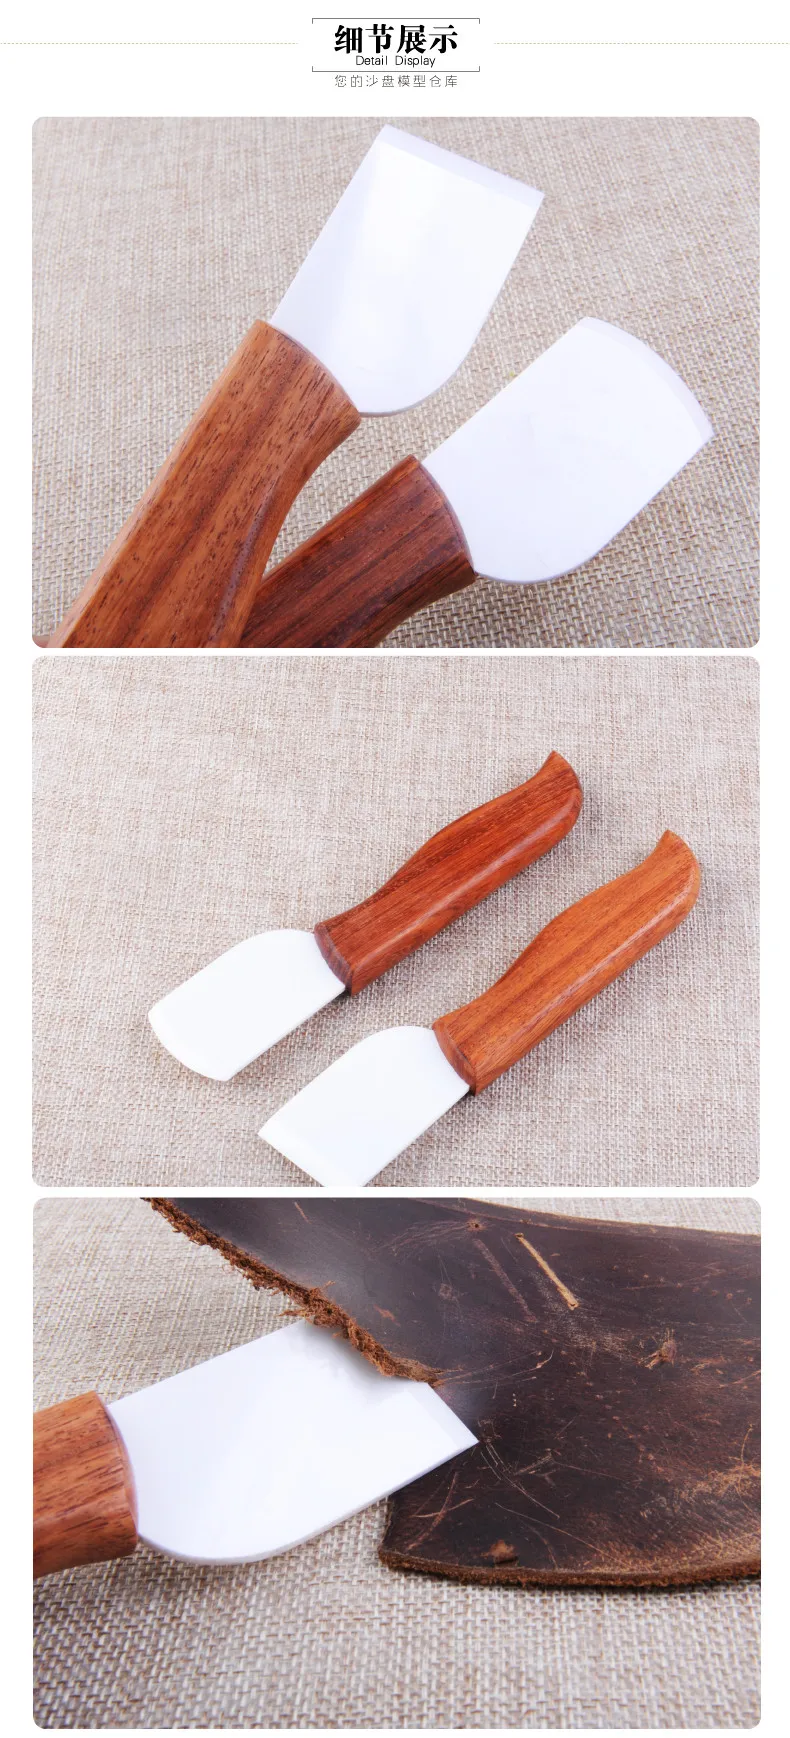 Инструменты для резки кожи с керамическим лезвием для рукоделия